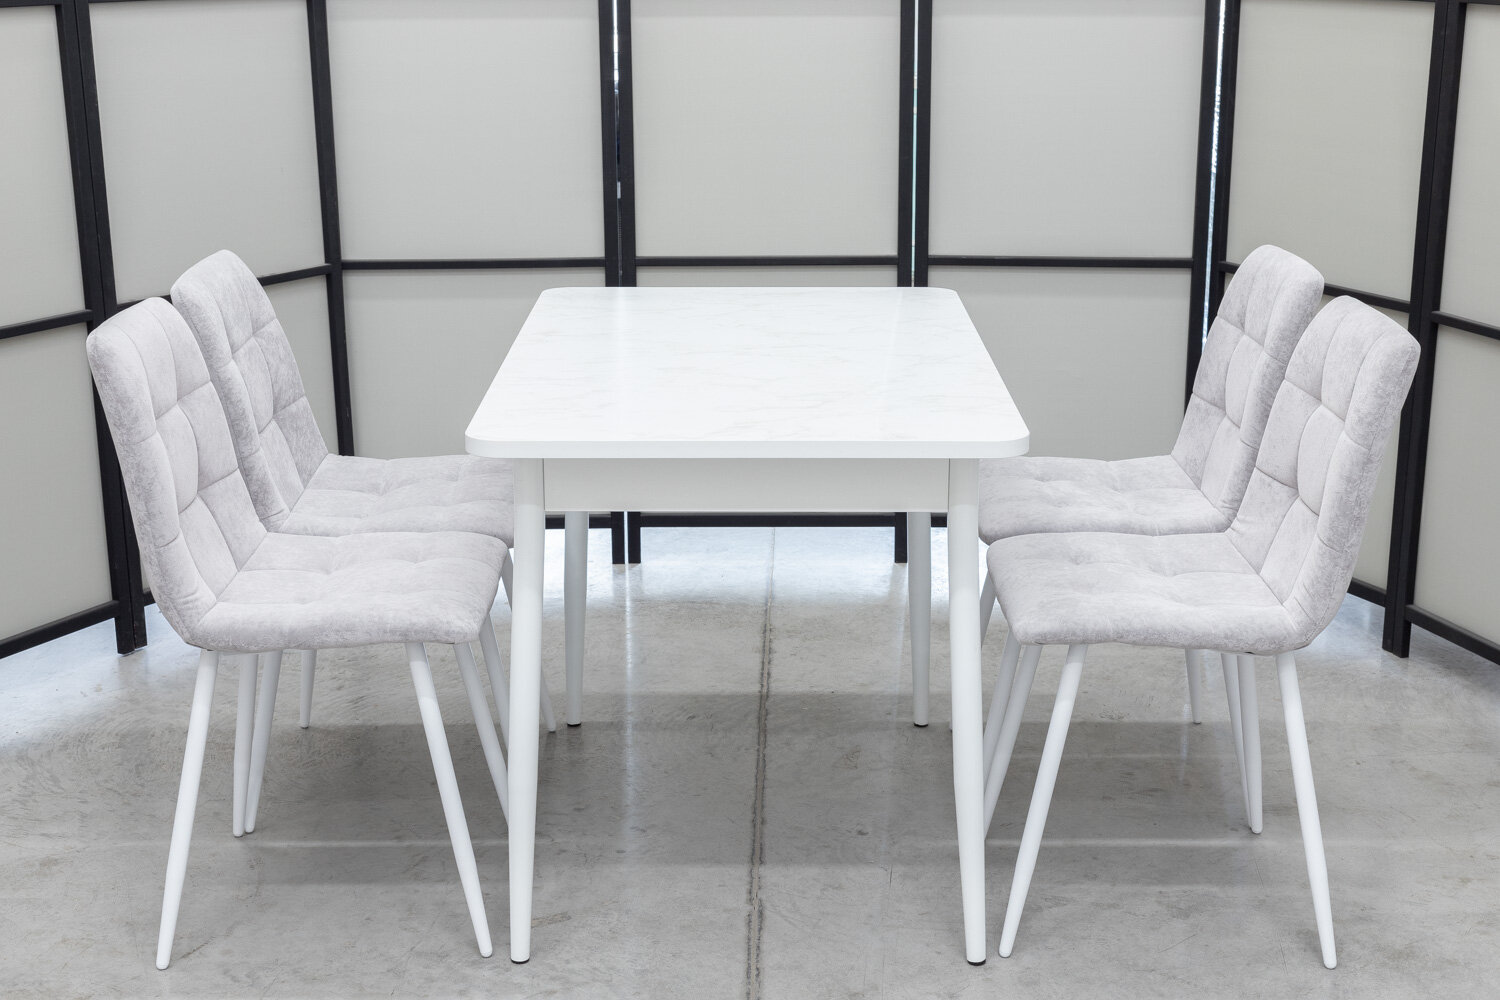 Обеденная группа Ост Кватро, стол белый термопластик, 110(140)х70 см, обивка стульев антивандальная, моющаяся, антикоготь, цвет светло-серый - фотография № 6